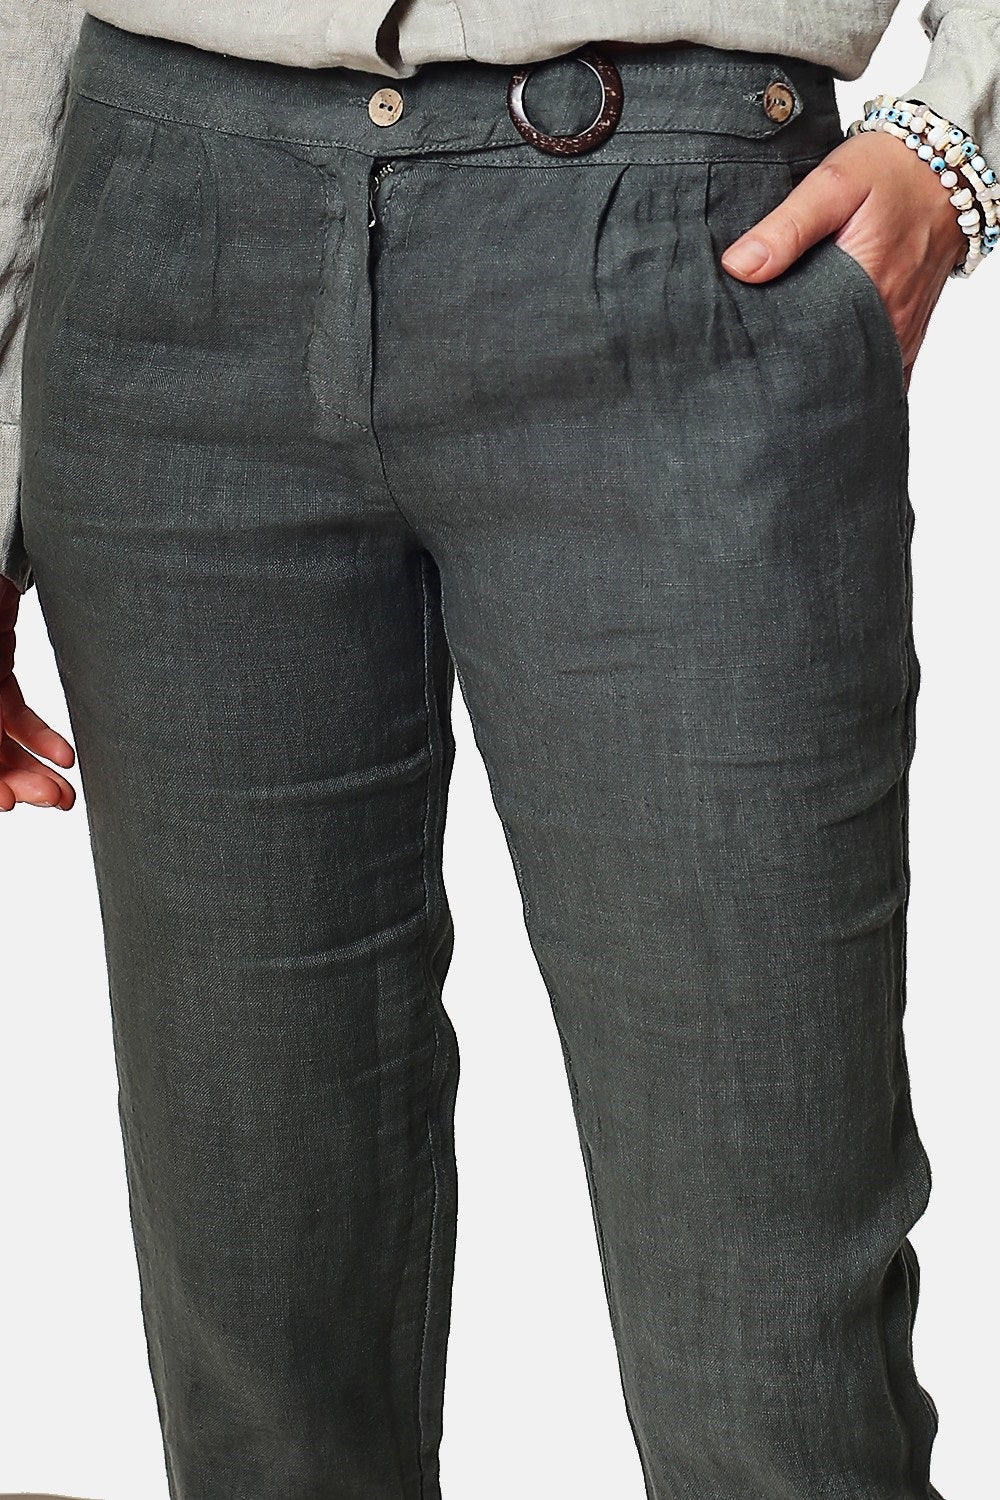 Kurze Hose mit Vintage-Schnalle. Taschen an den Seiten